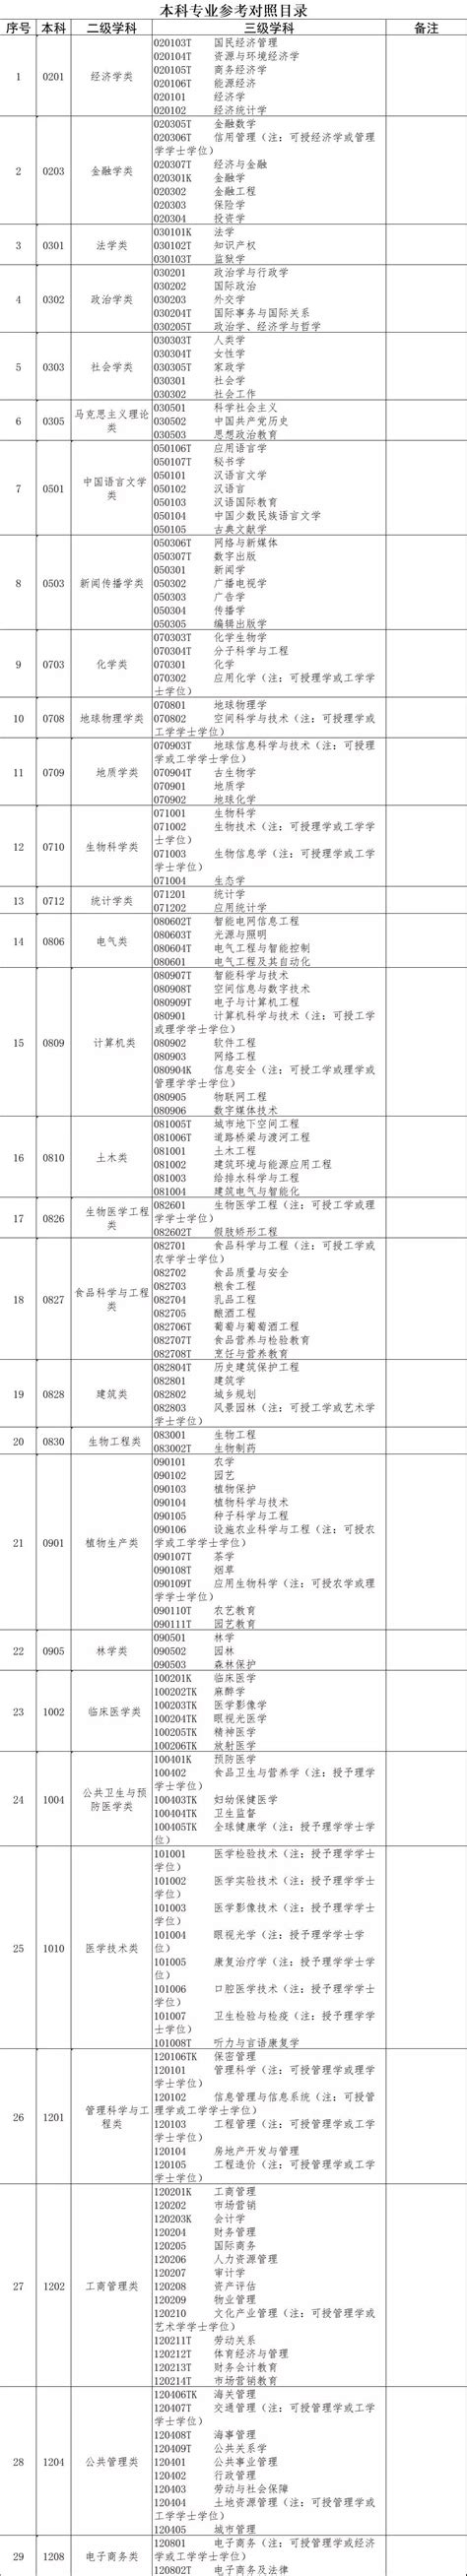 郑州周边部分行政事业单位招聘信息汇总 - 报考职位 - 中原考试研究院